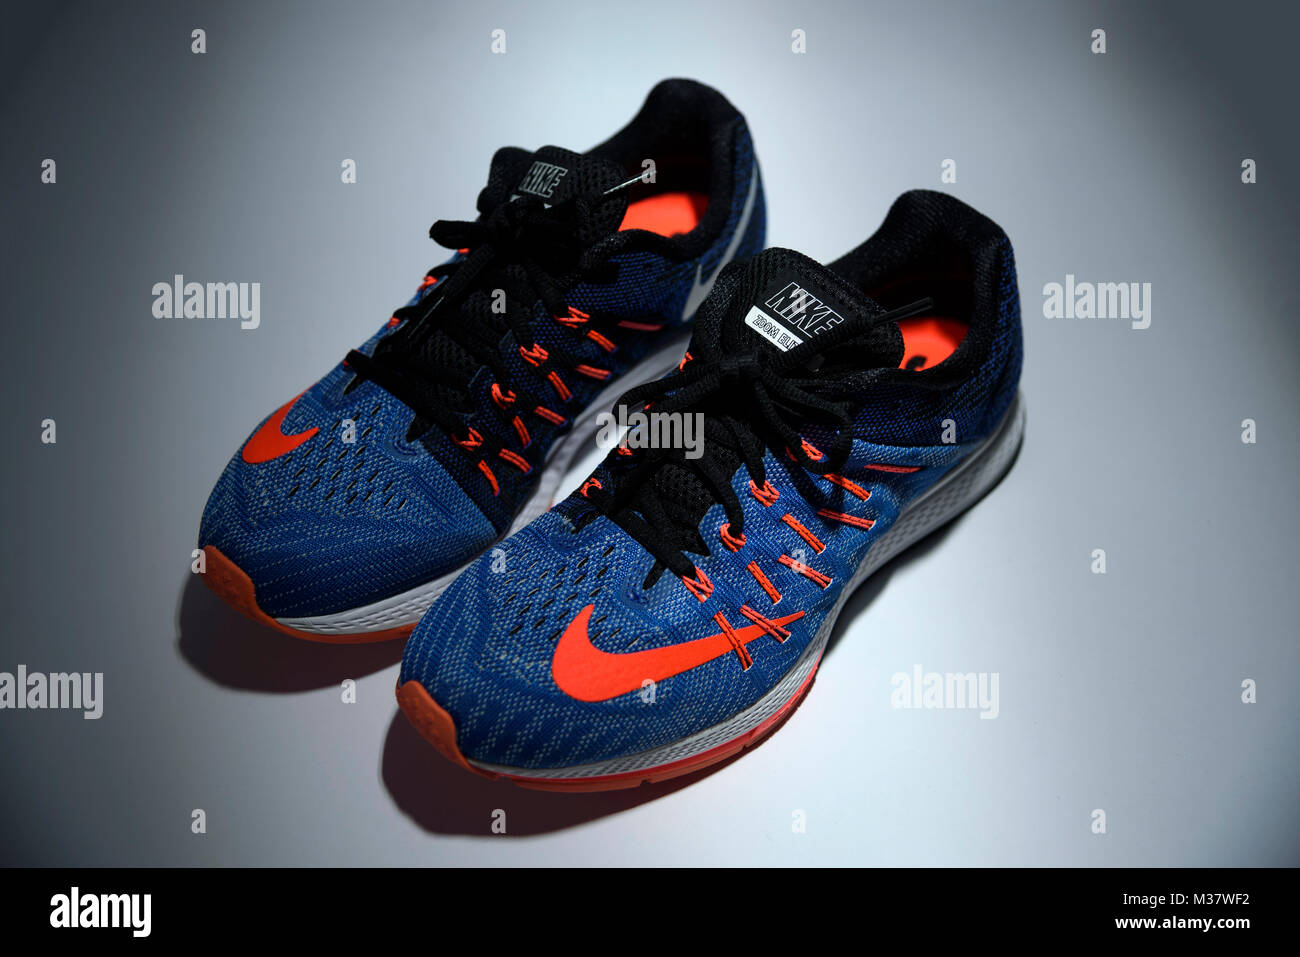 El y el naranja Nike Zoom Elite 8 zapatillas aislado sobre fondo blanco Fotografía de - Alamy